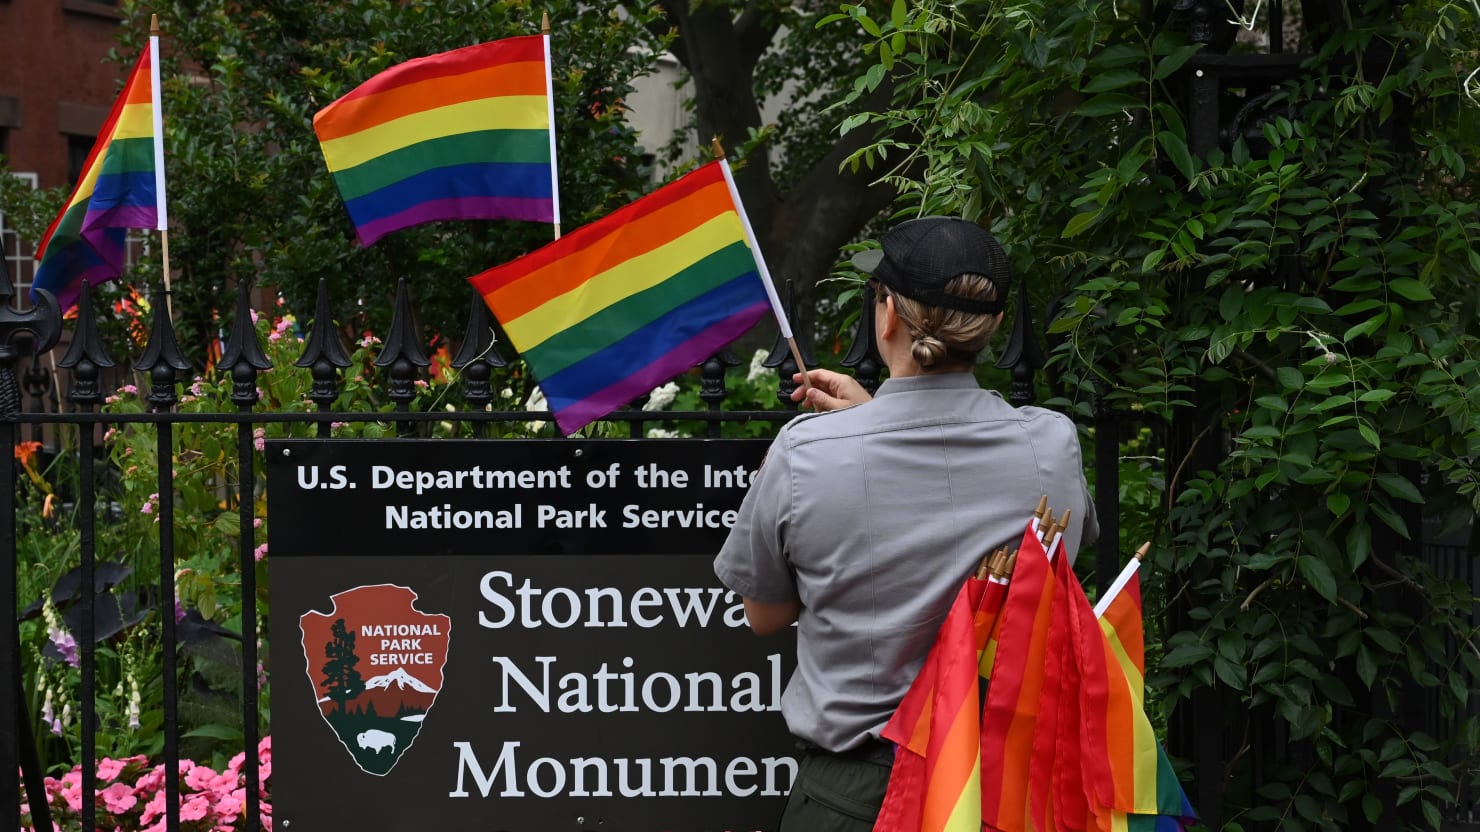 Des vandales brisent les drapeaux de la fierté au monument de Stonewall dédié aux droits LGBTQ